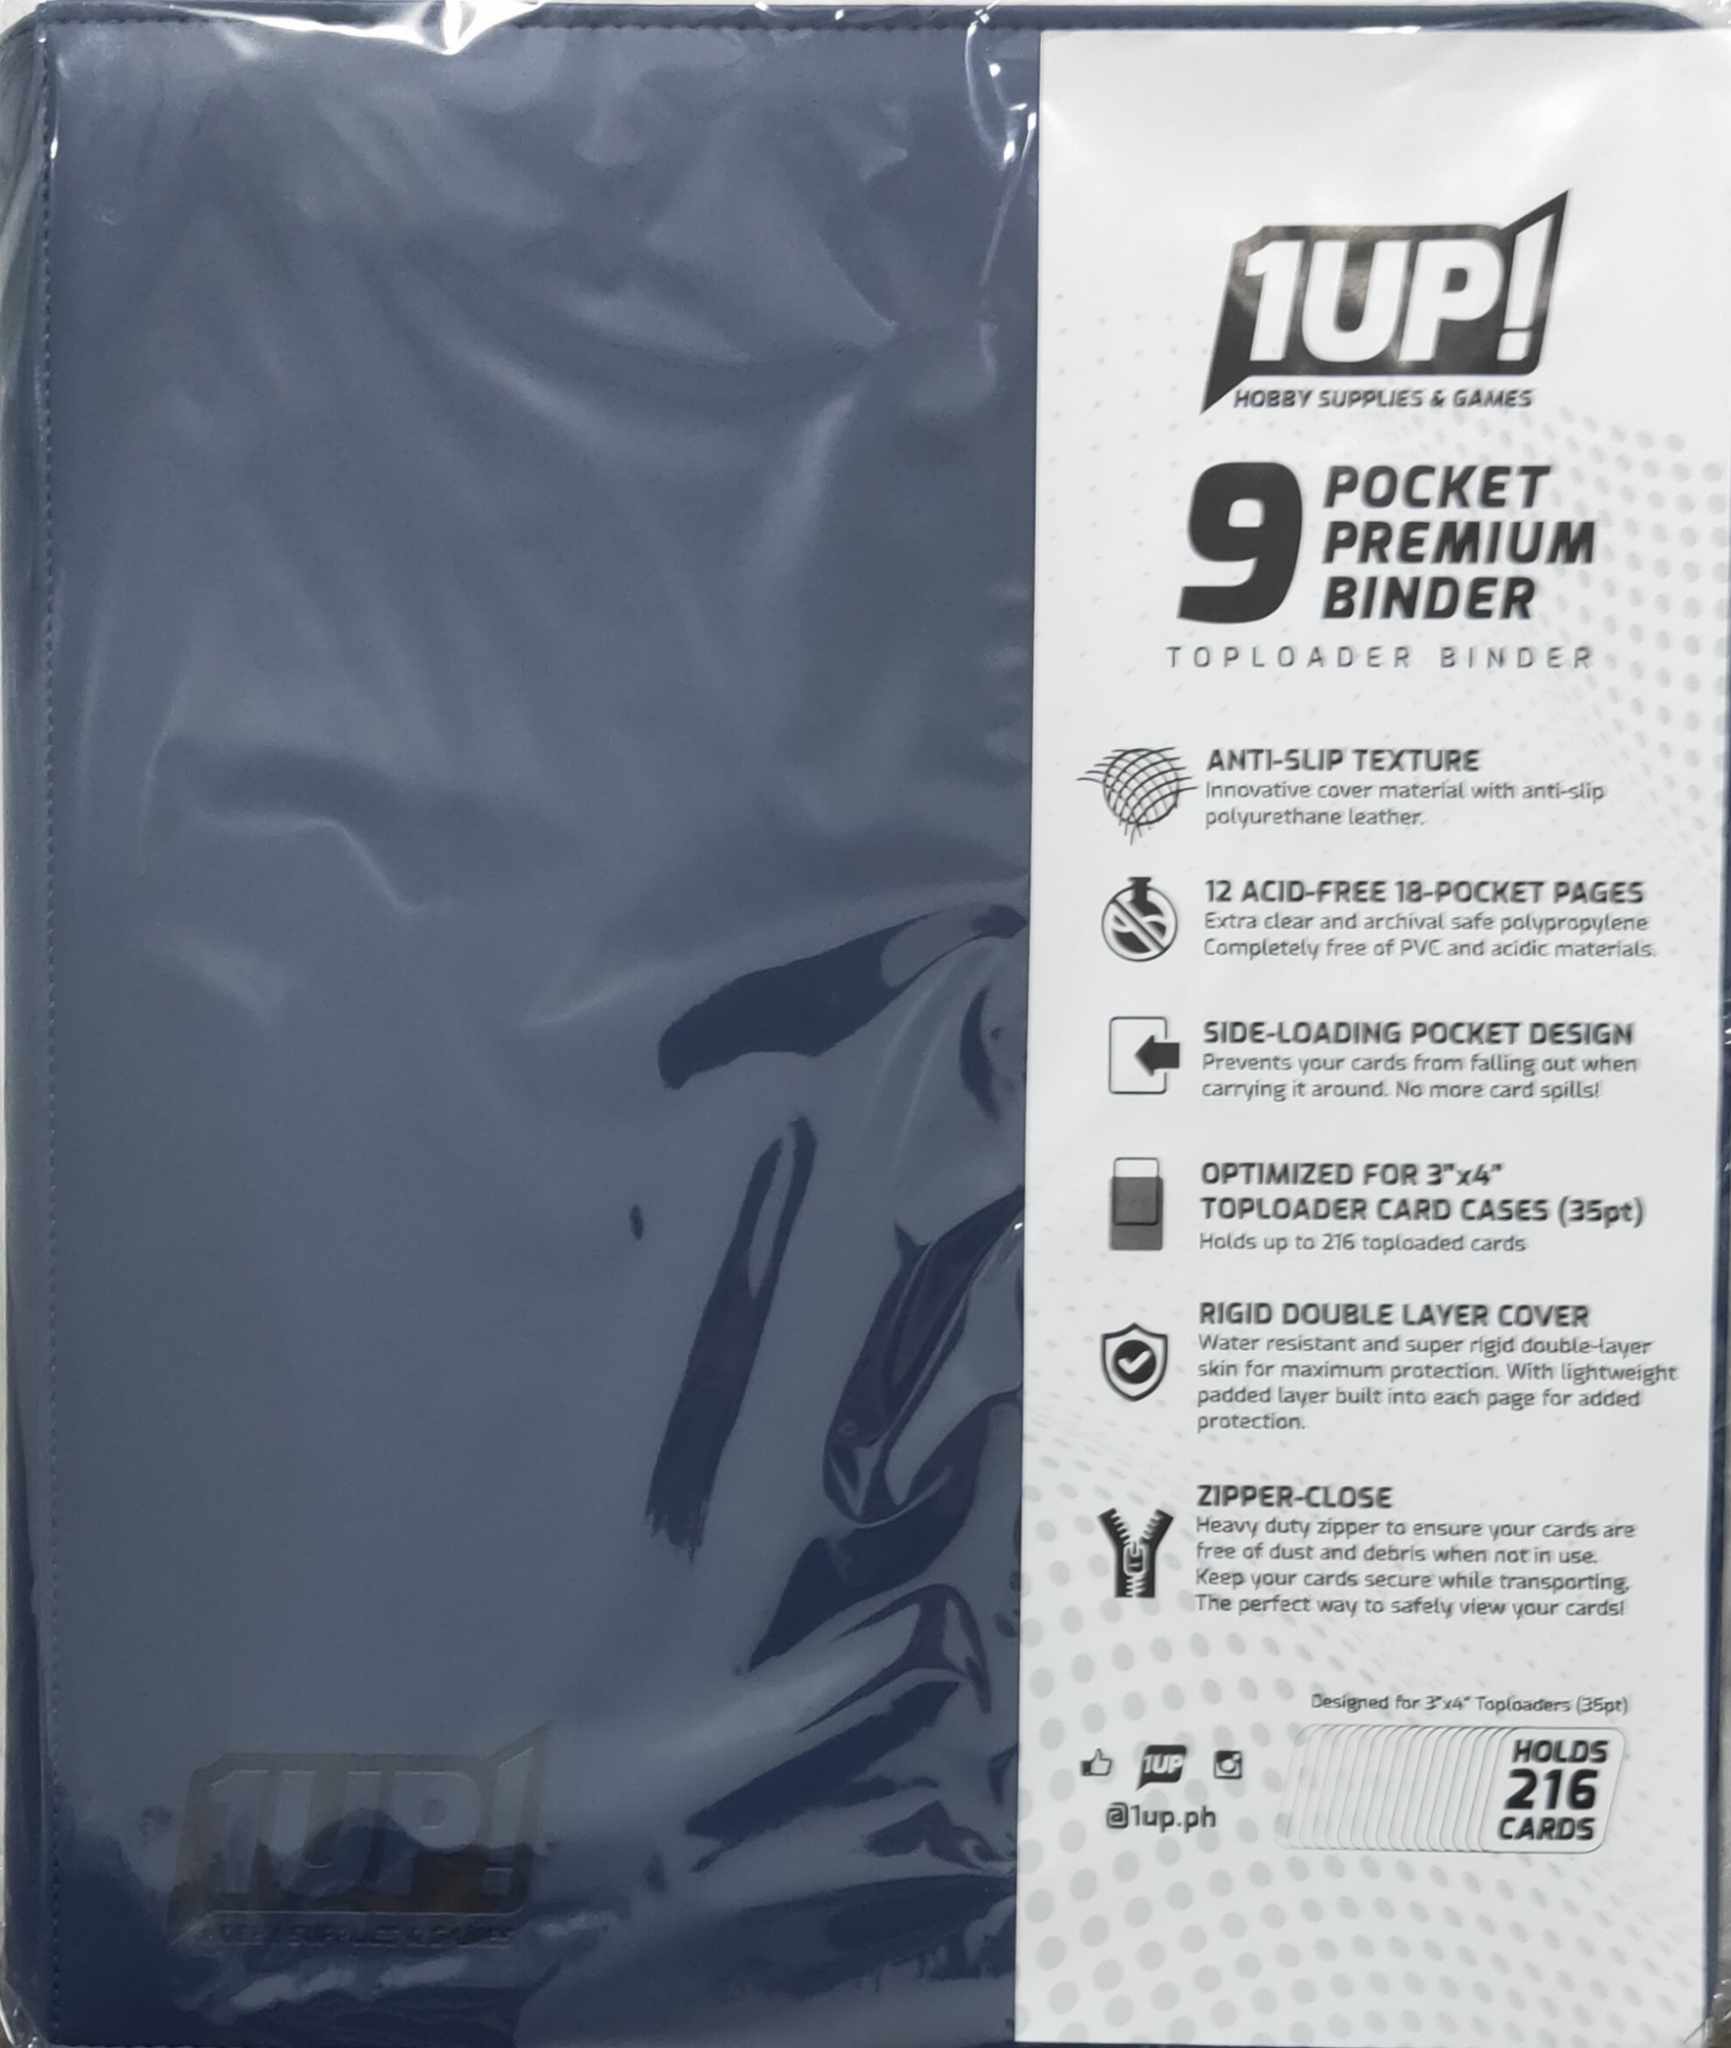 1UP – 9 Pocket – Premium Top Loader Binder – Navy Blue